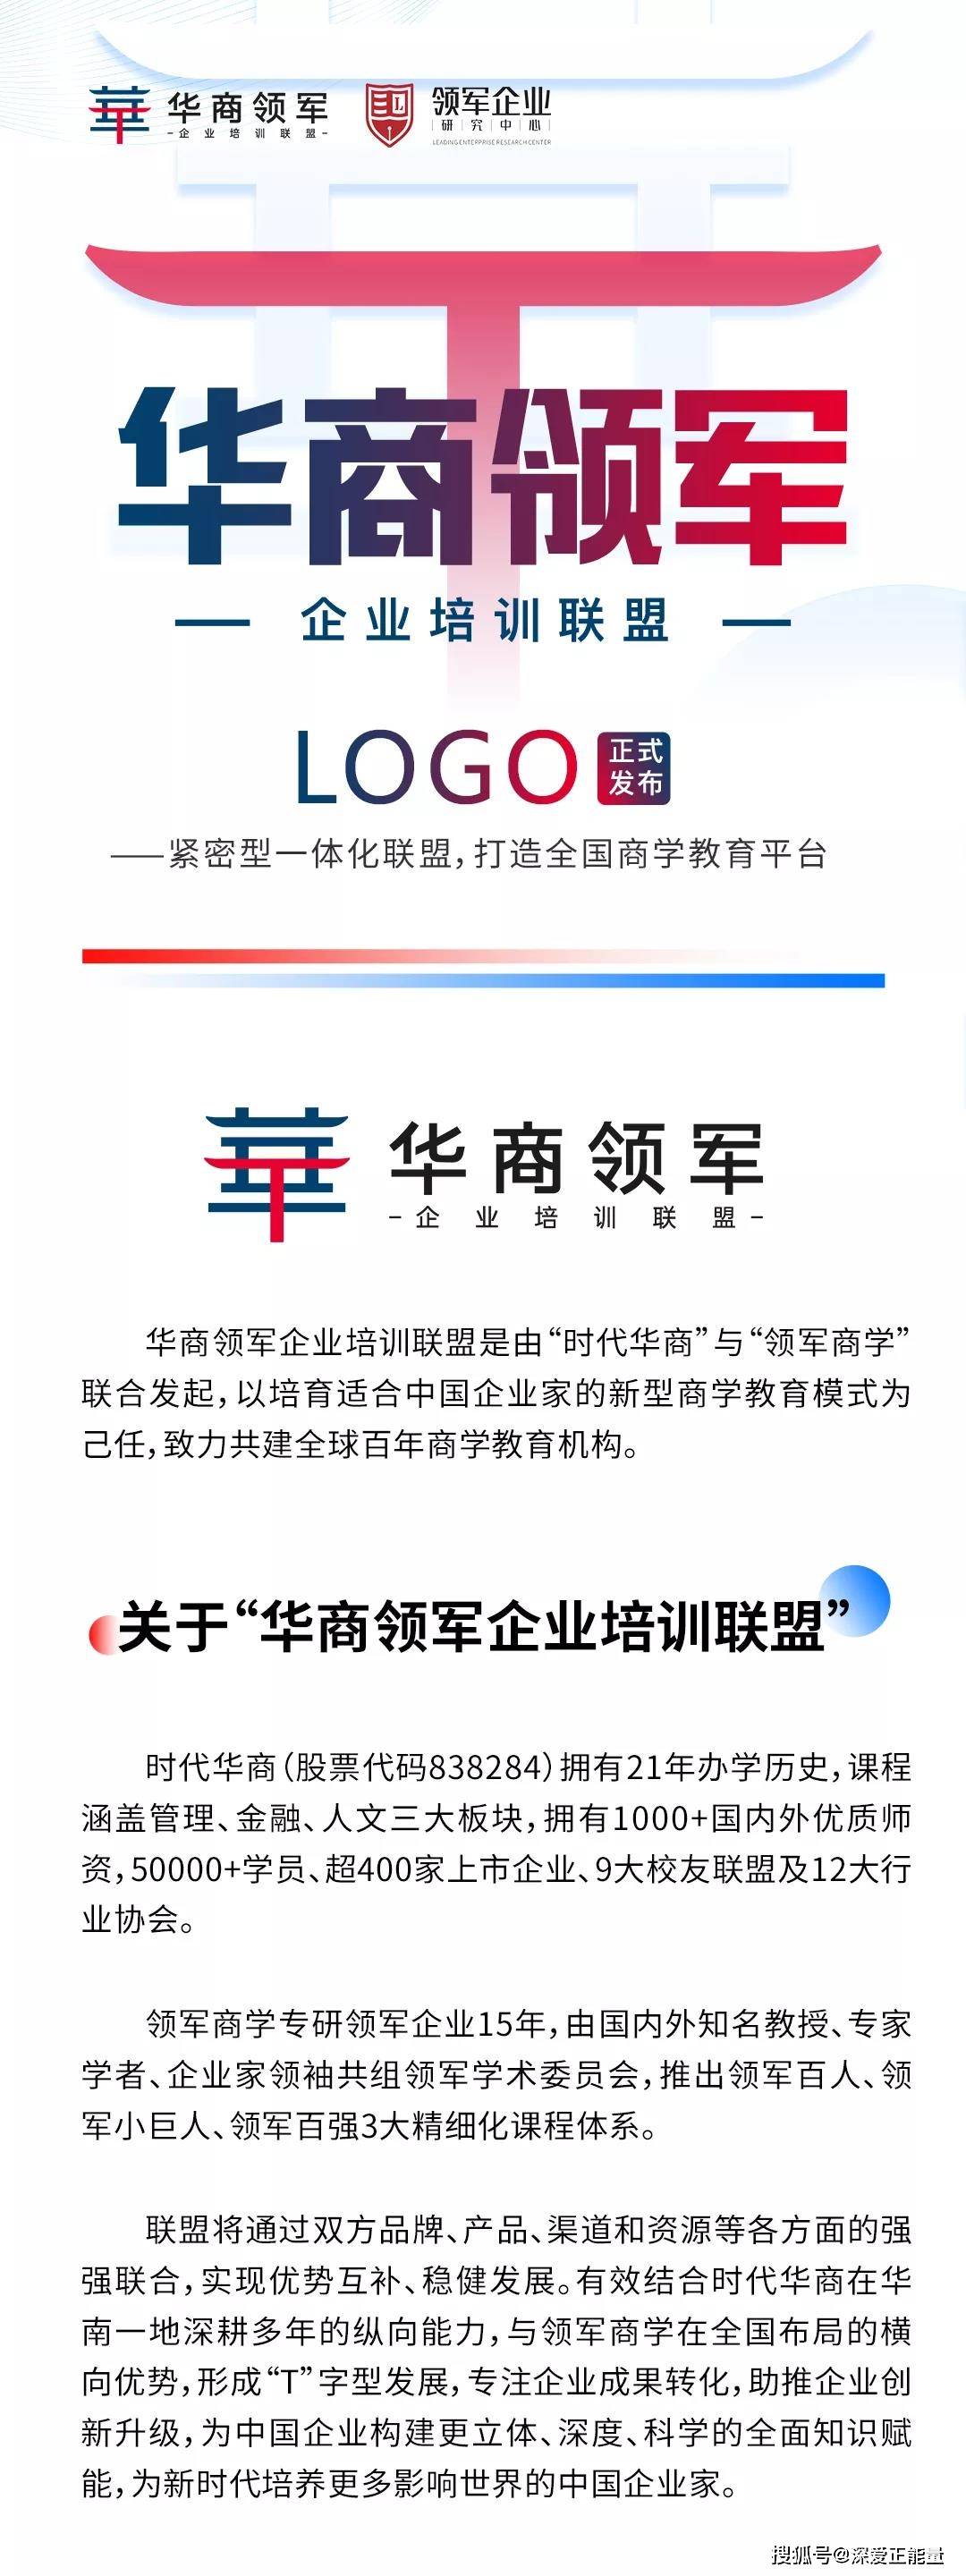 华商领军企业培训联盟logo正式发布